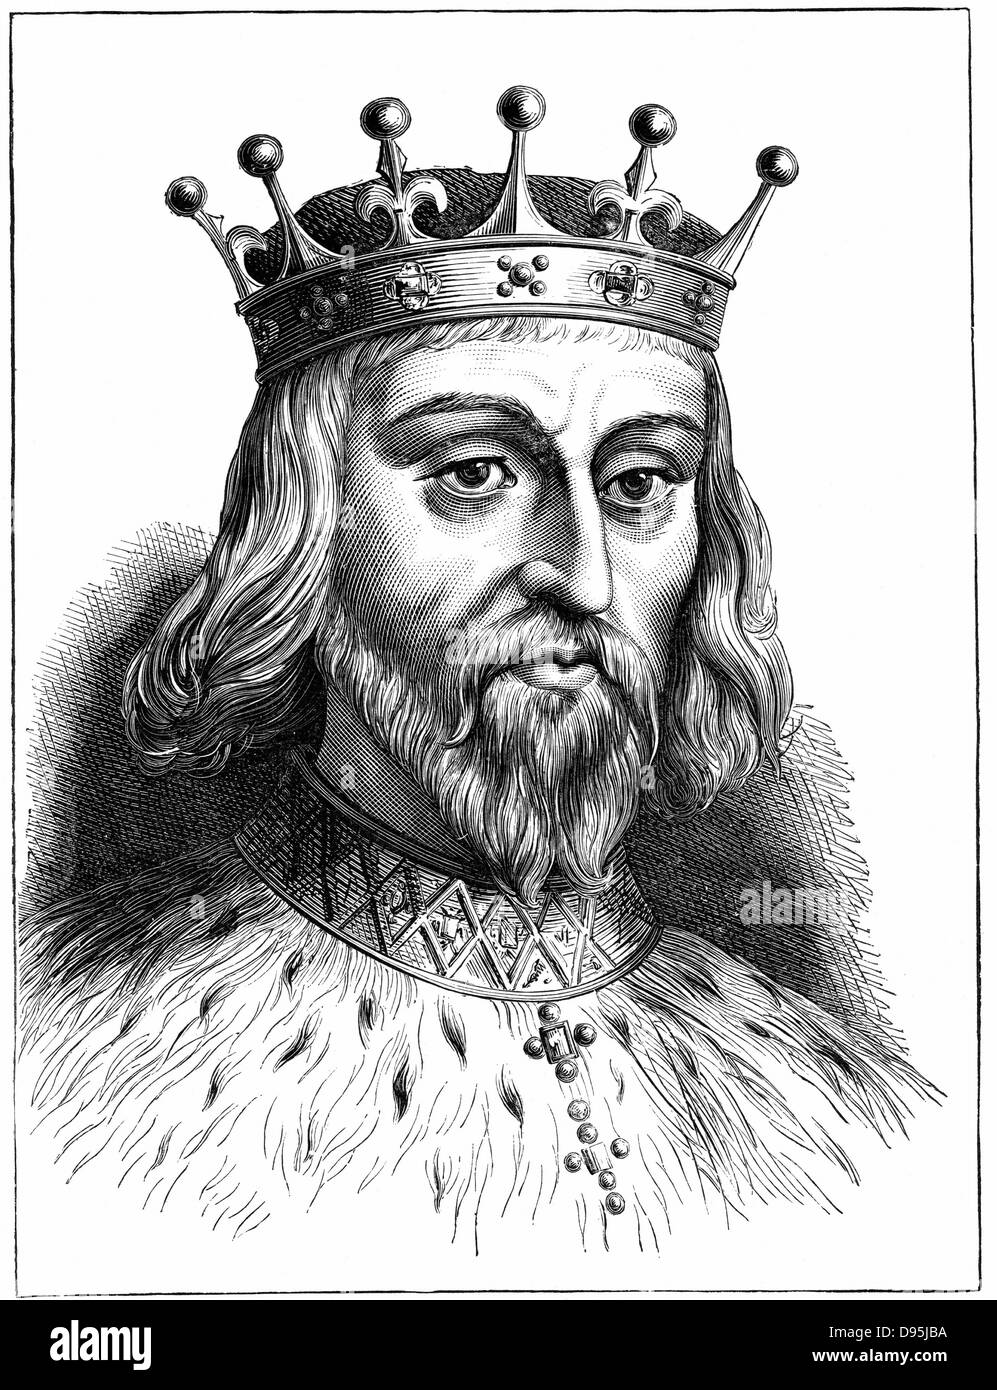 Enrique II (1138-89) el rey de Inglaterra desde 1154. Primer Plantagenet, rey de Inglaterra. El grabado en madera. Foto de stock